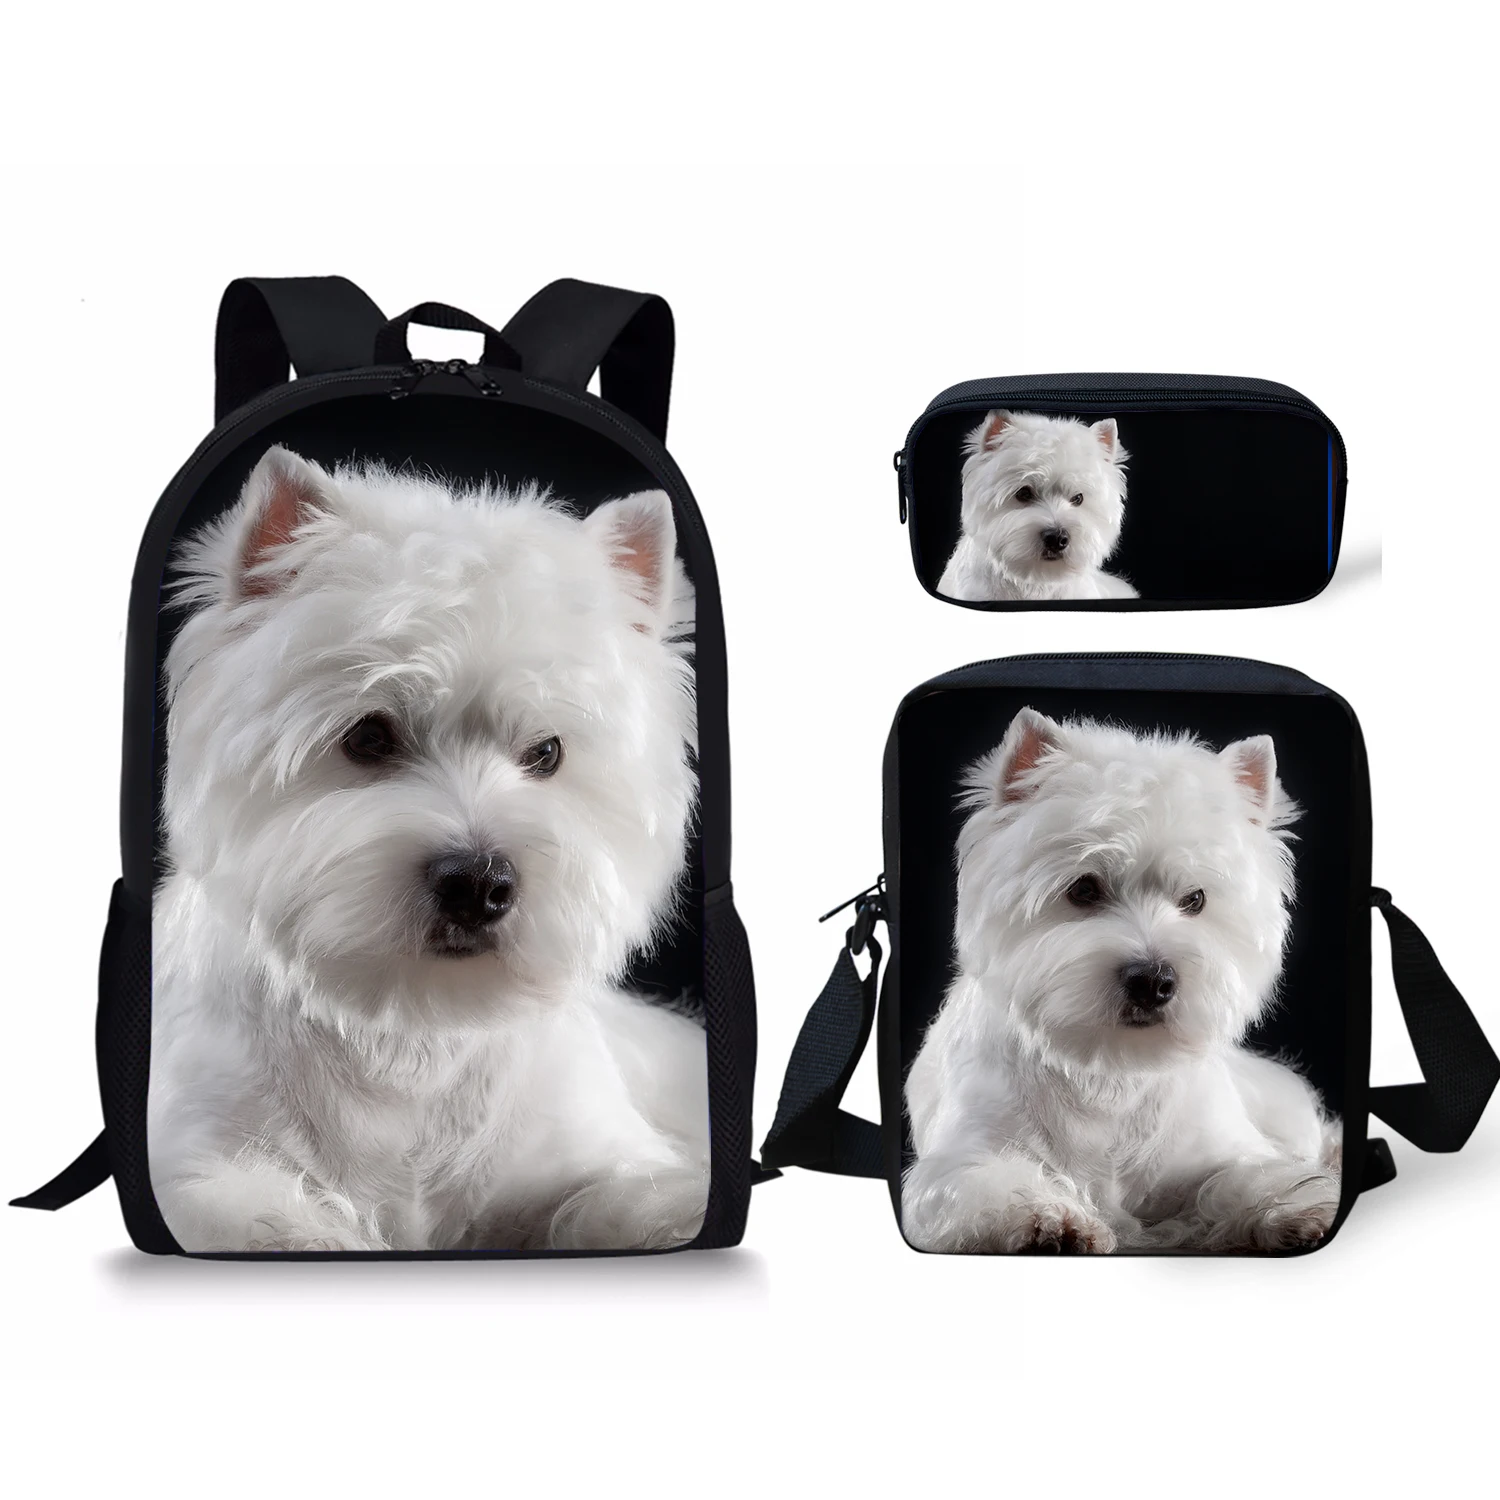 Школьная сумка West Highland Terrier 3 шт./компл., школьная сумка, ежедневный рюкзак, новинка 2022, подарок для девочек, школьные сумки, бесплатная достав...